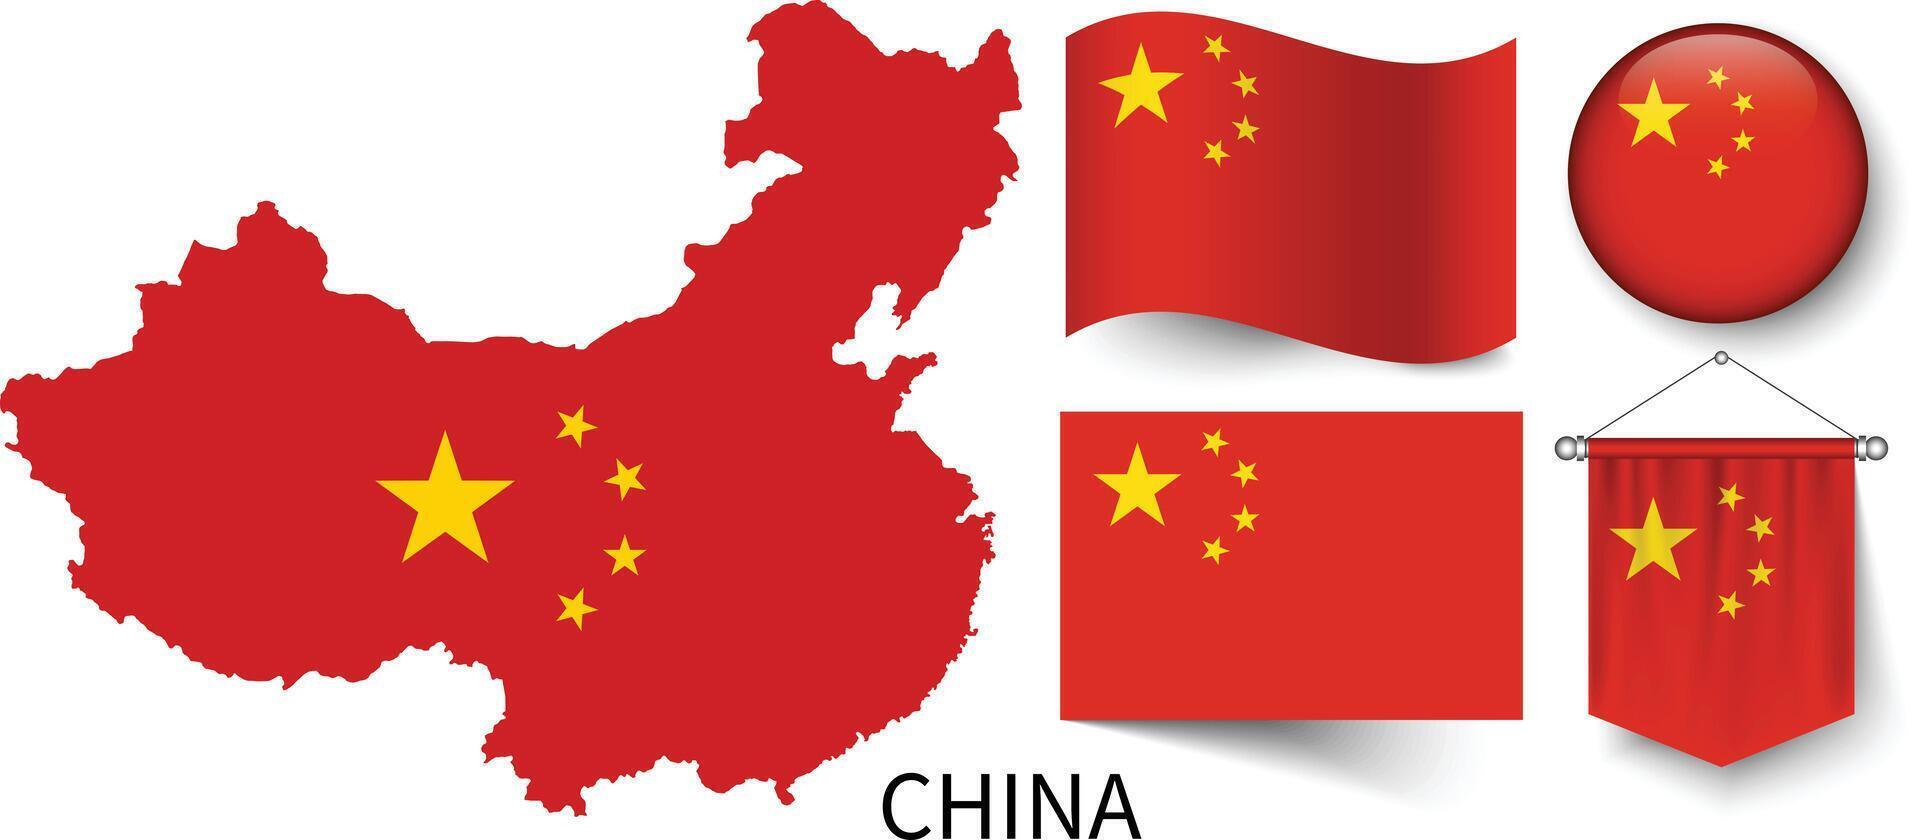 el varios patrones de el China nacional banderas y el mapa de de china fronteras vector